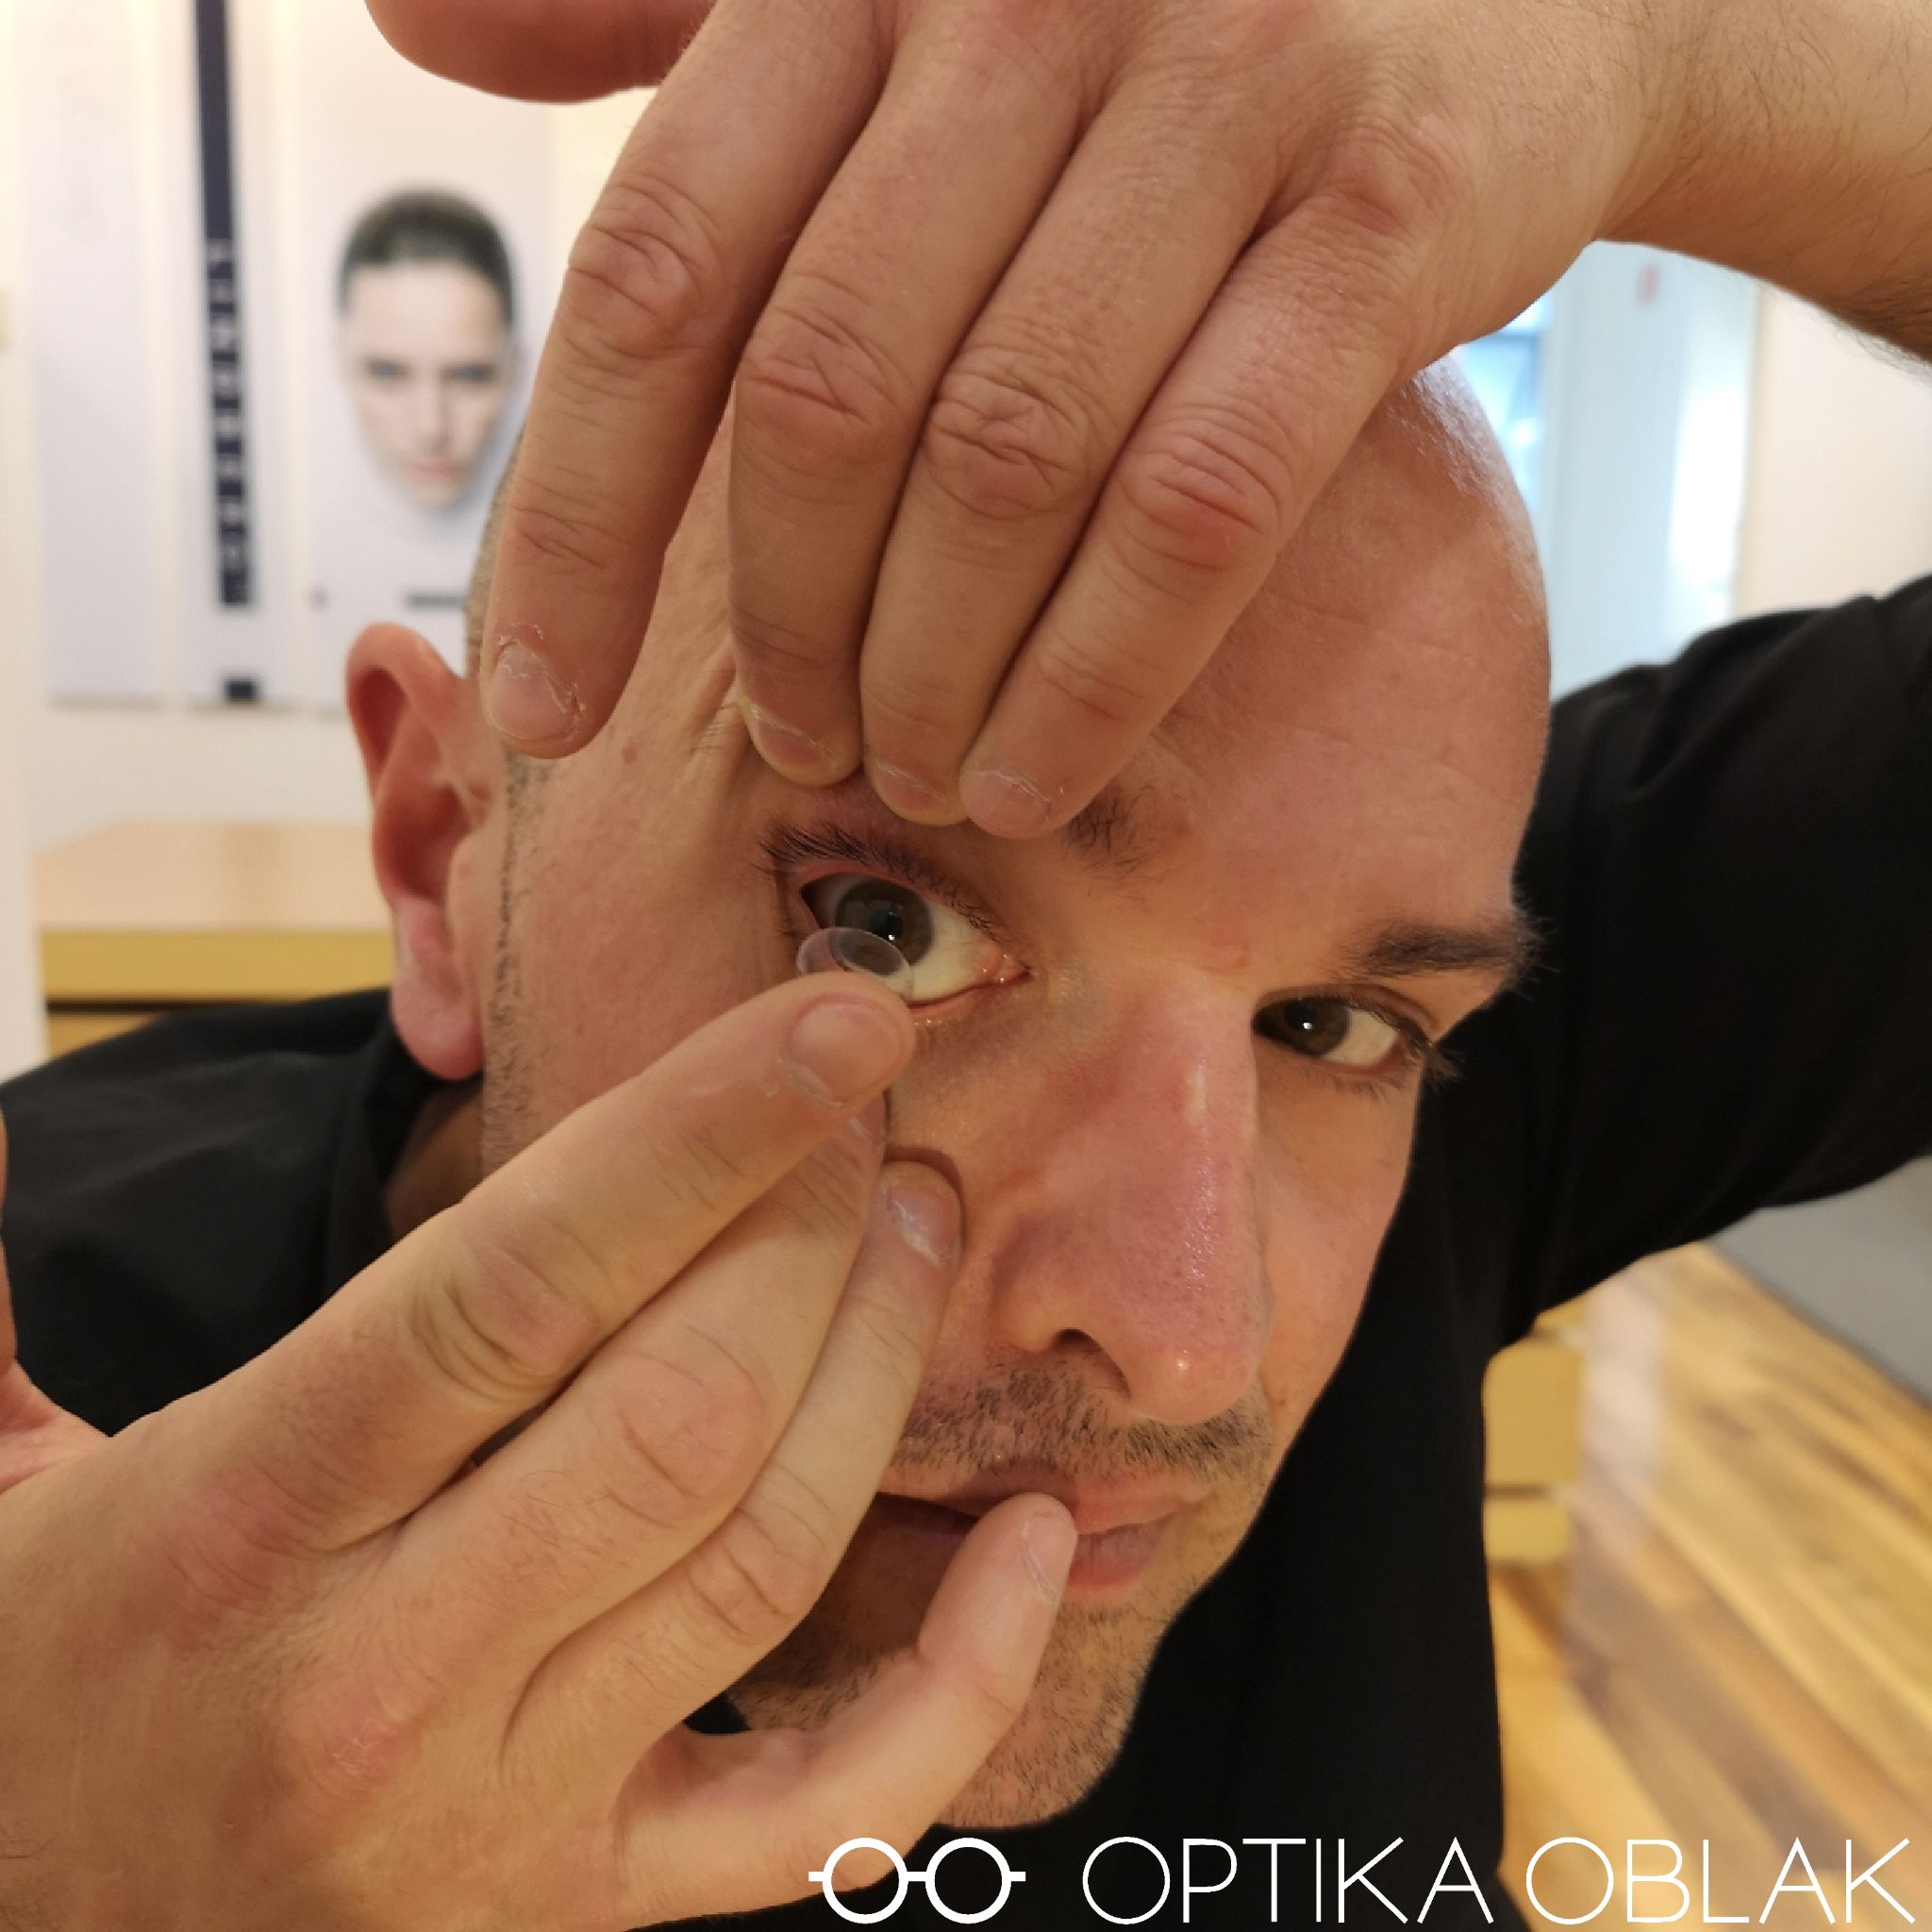 Vstavljanje kontaktne leče v oko